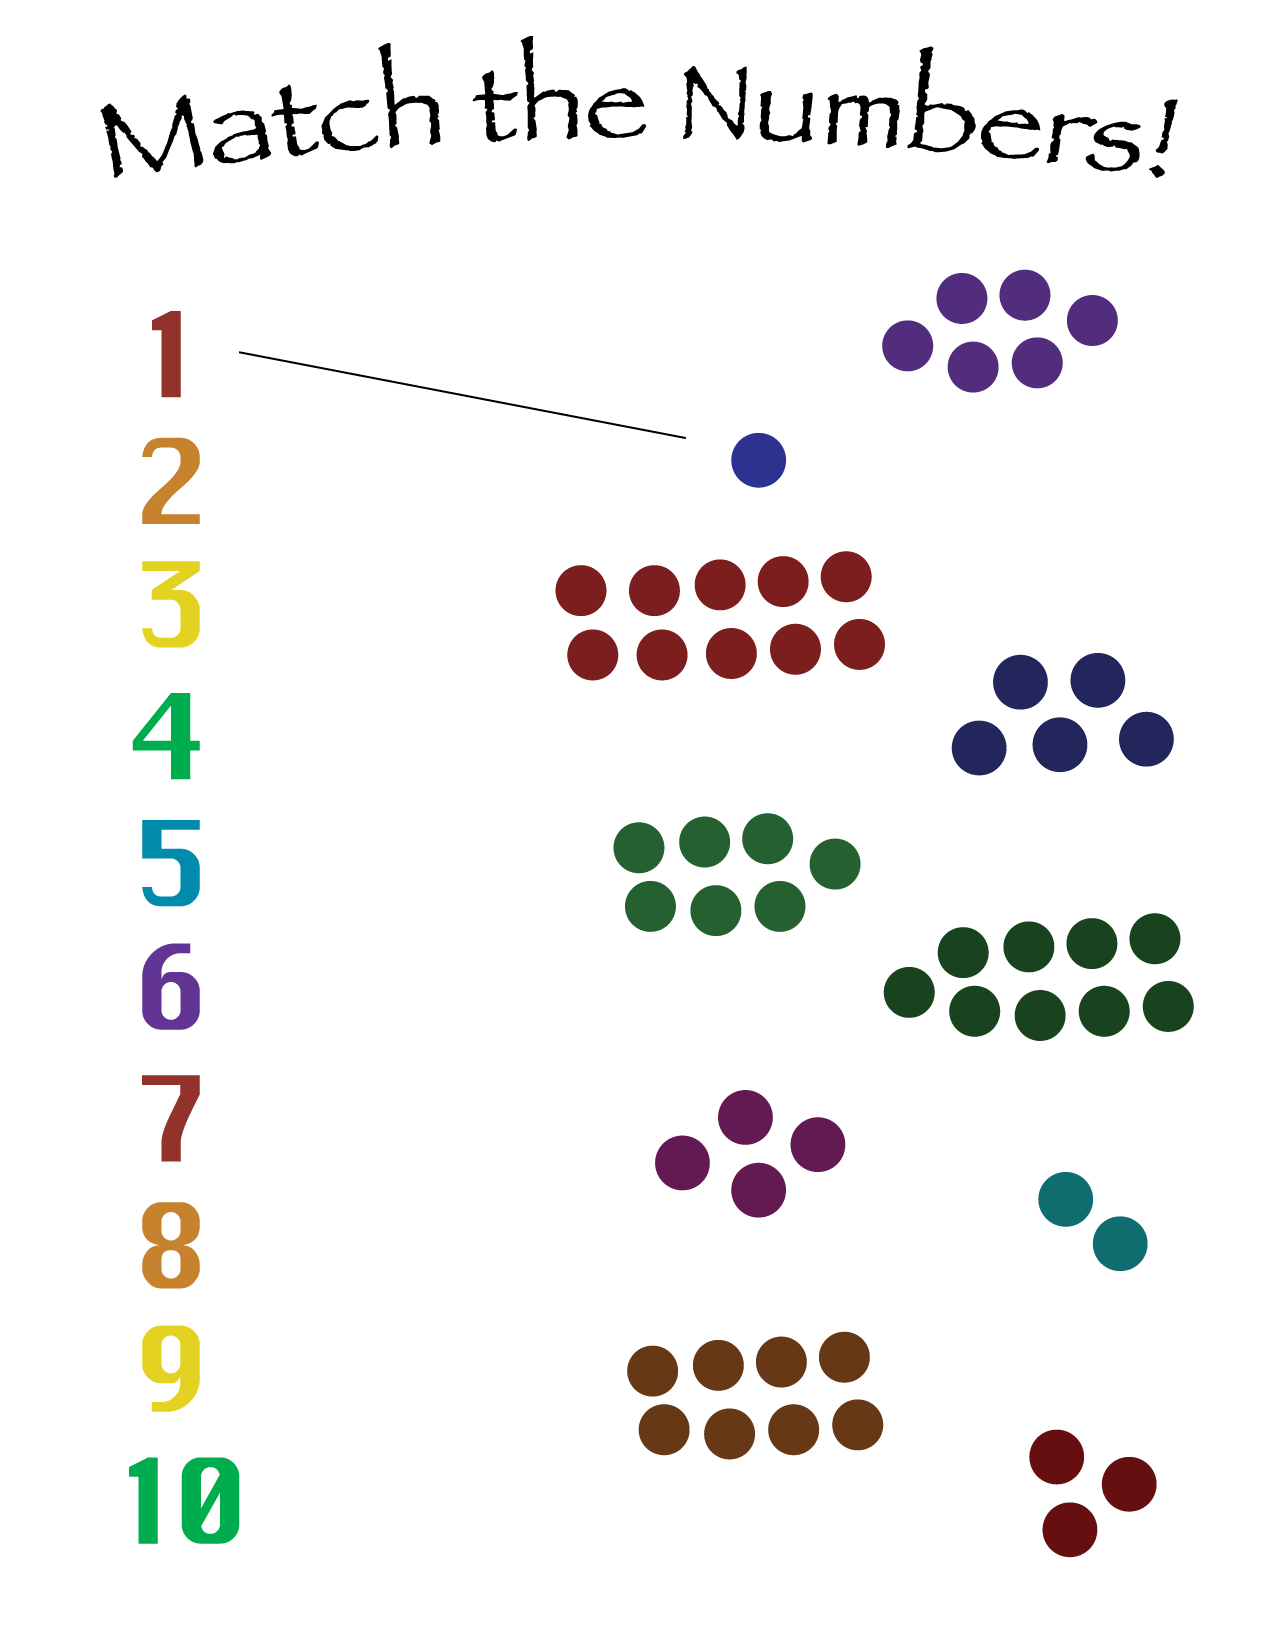 Number-match math sheet